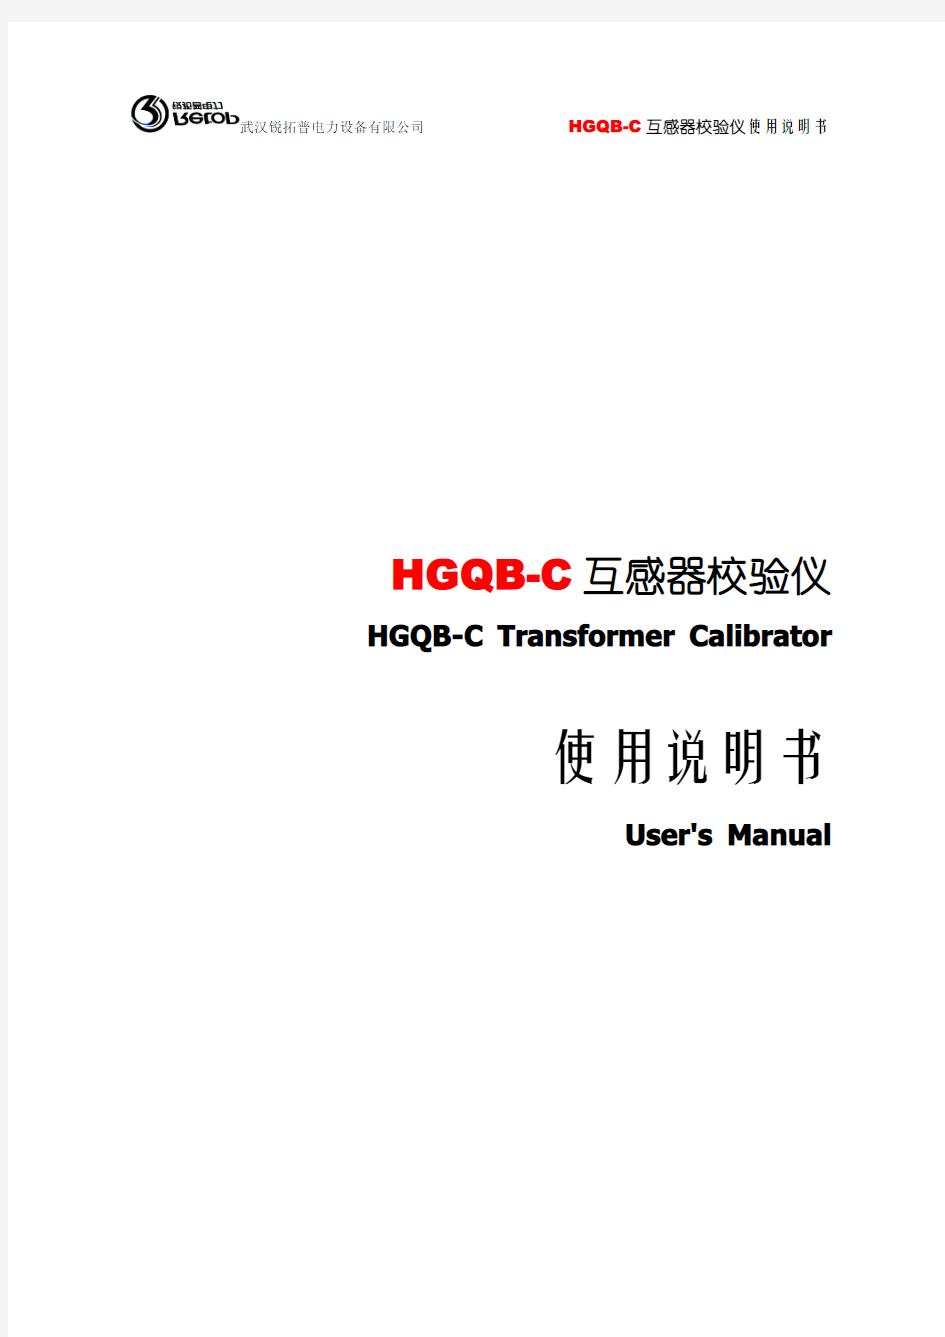 HGQB-C互感器校验仪说明书